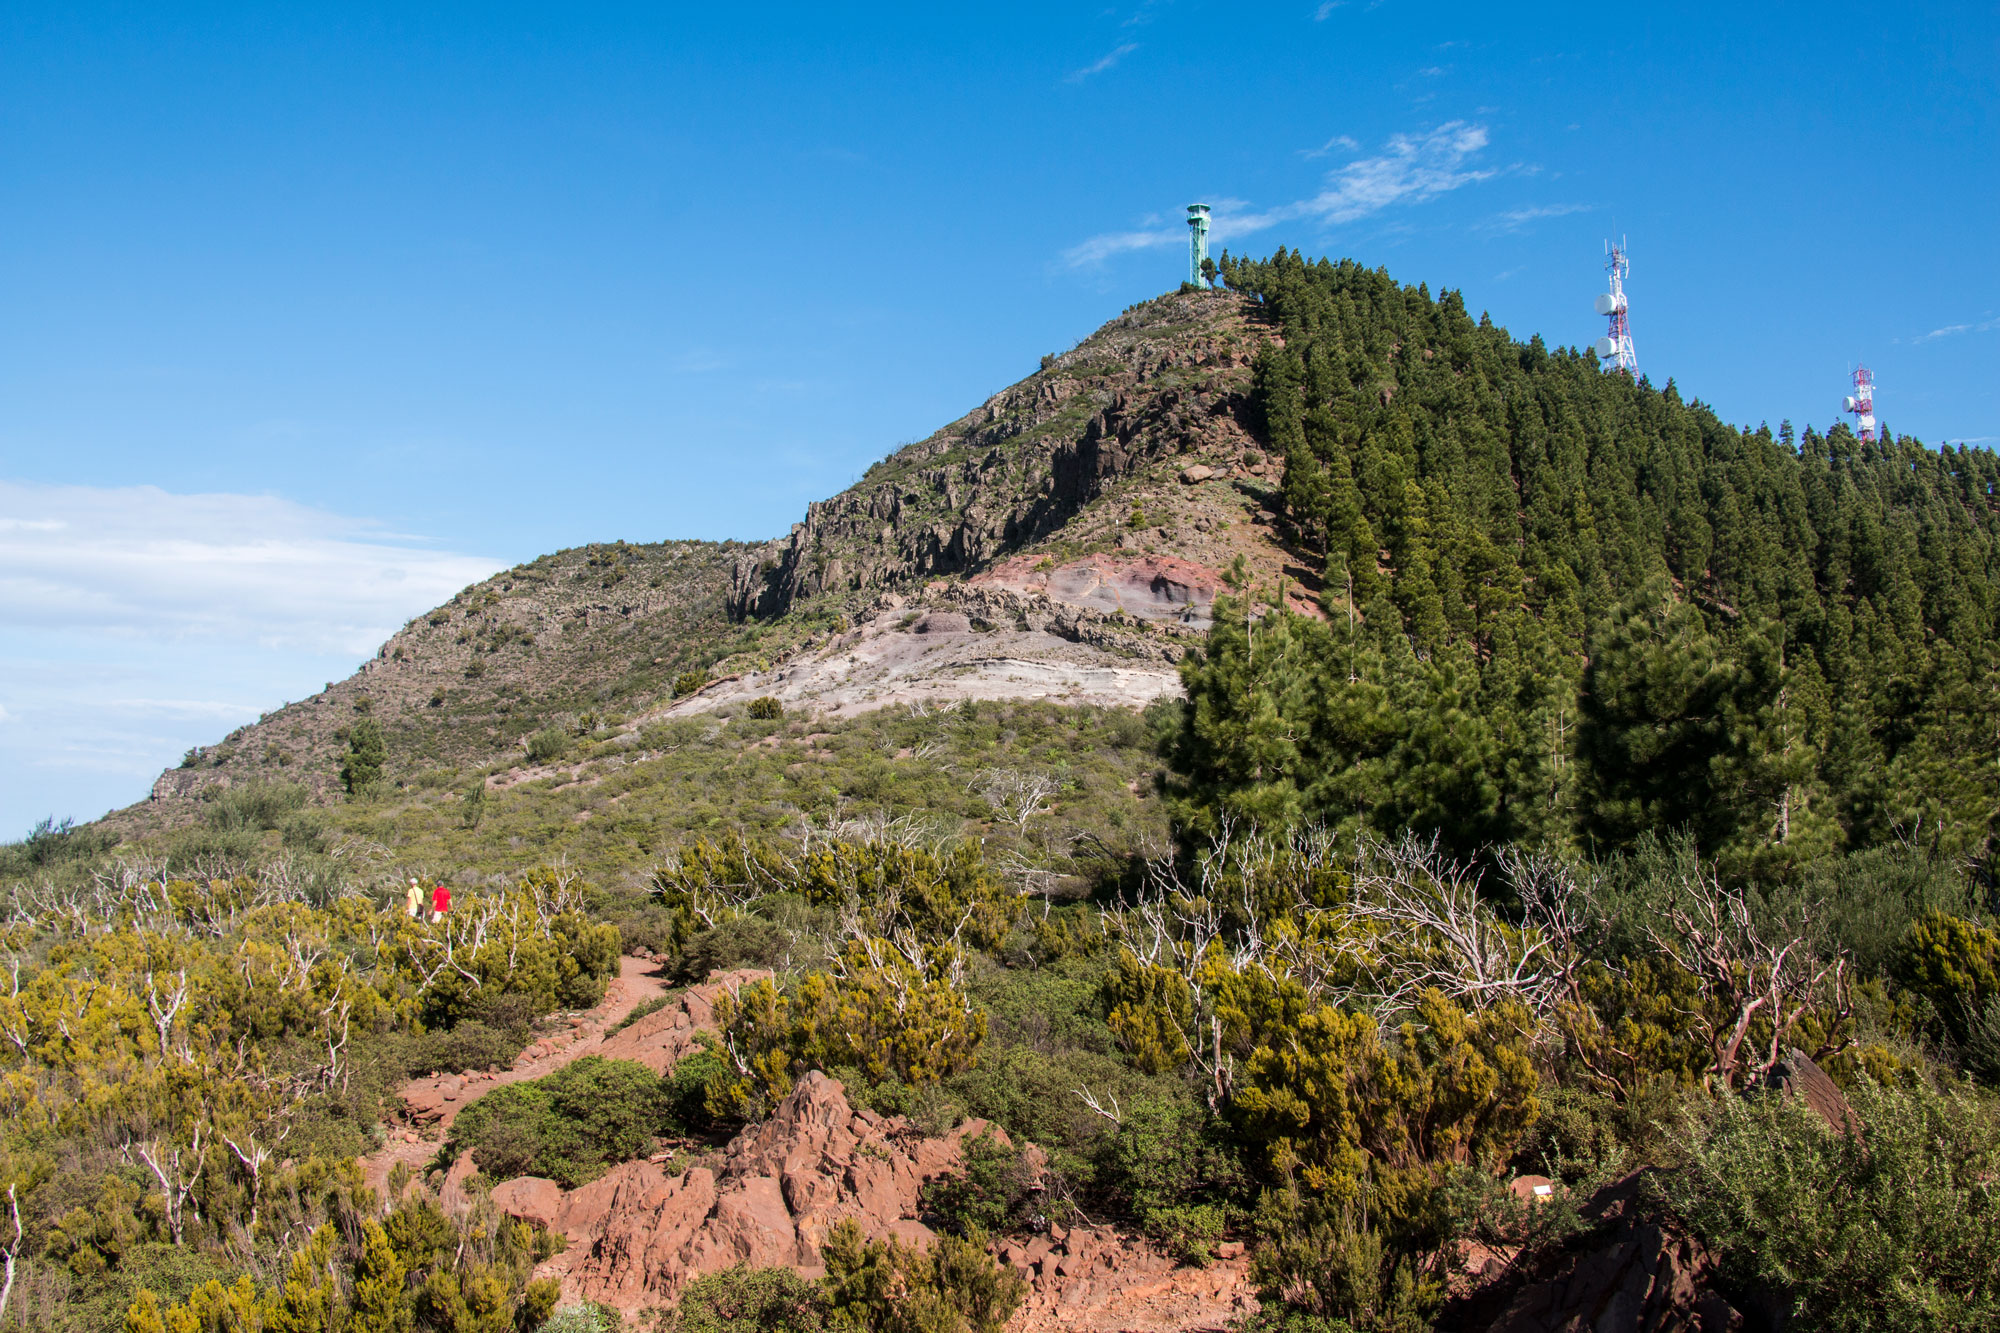 Von der Degollada de la Mesa im Teno Gebirge können Wanderer auf den Großen Gala (Bild) und den Kleinen Gala wandern. Der Große Gala ist der höchste Berg im Teno Gebirge.